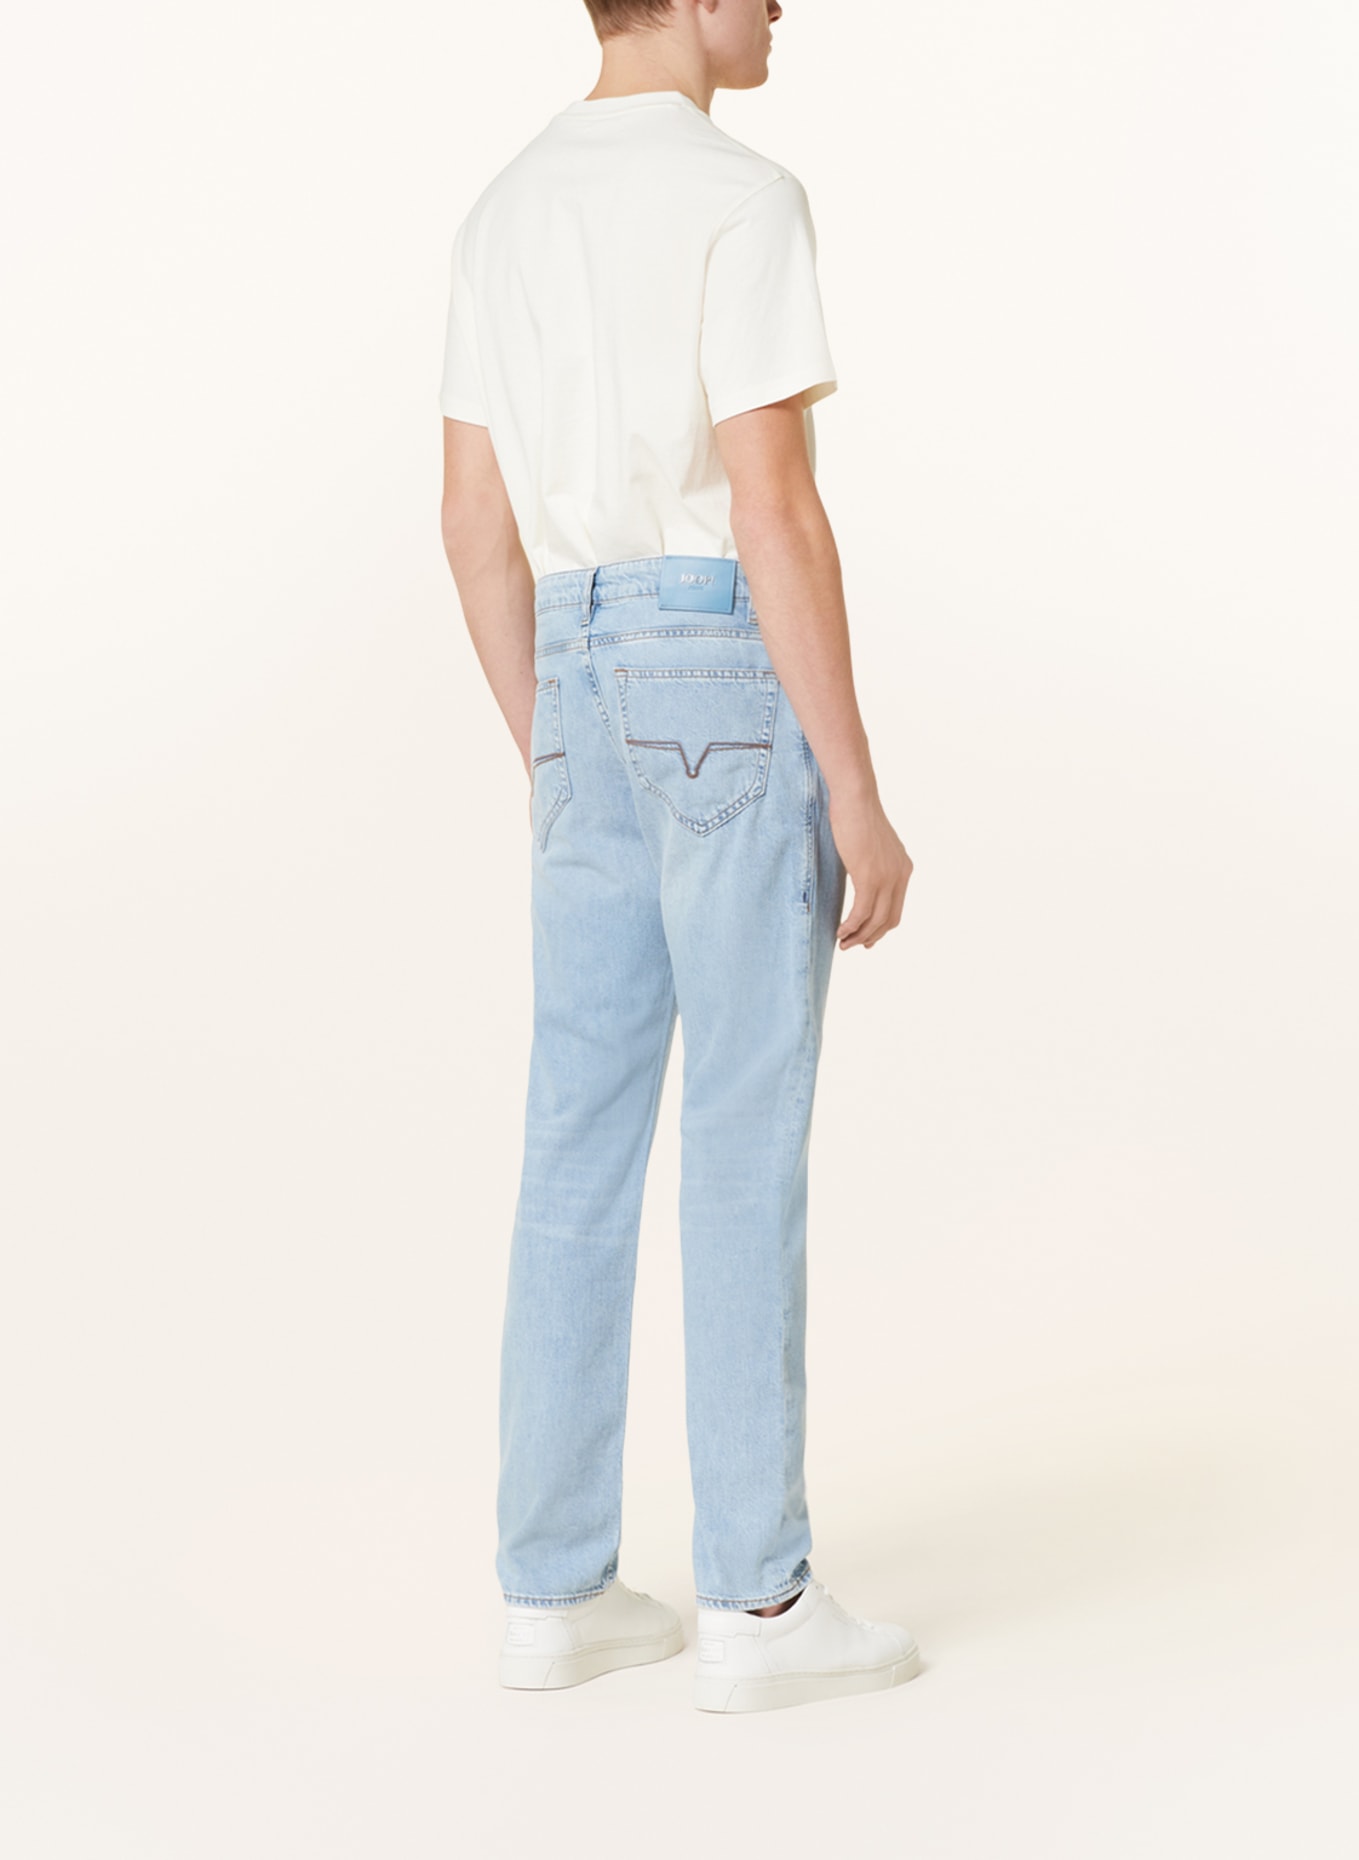 JOOP! JEANS Jeans MITCH modern fit, Color: 451 Lt/Pastel Blue             451 (Image 3)